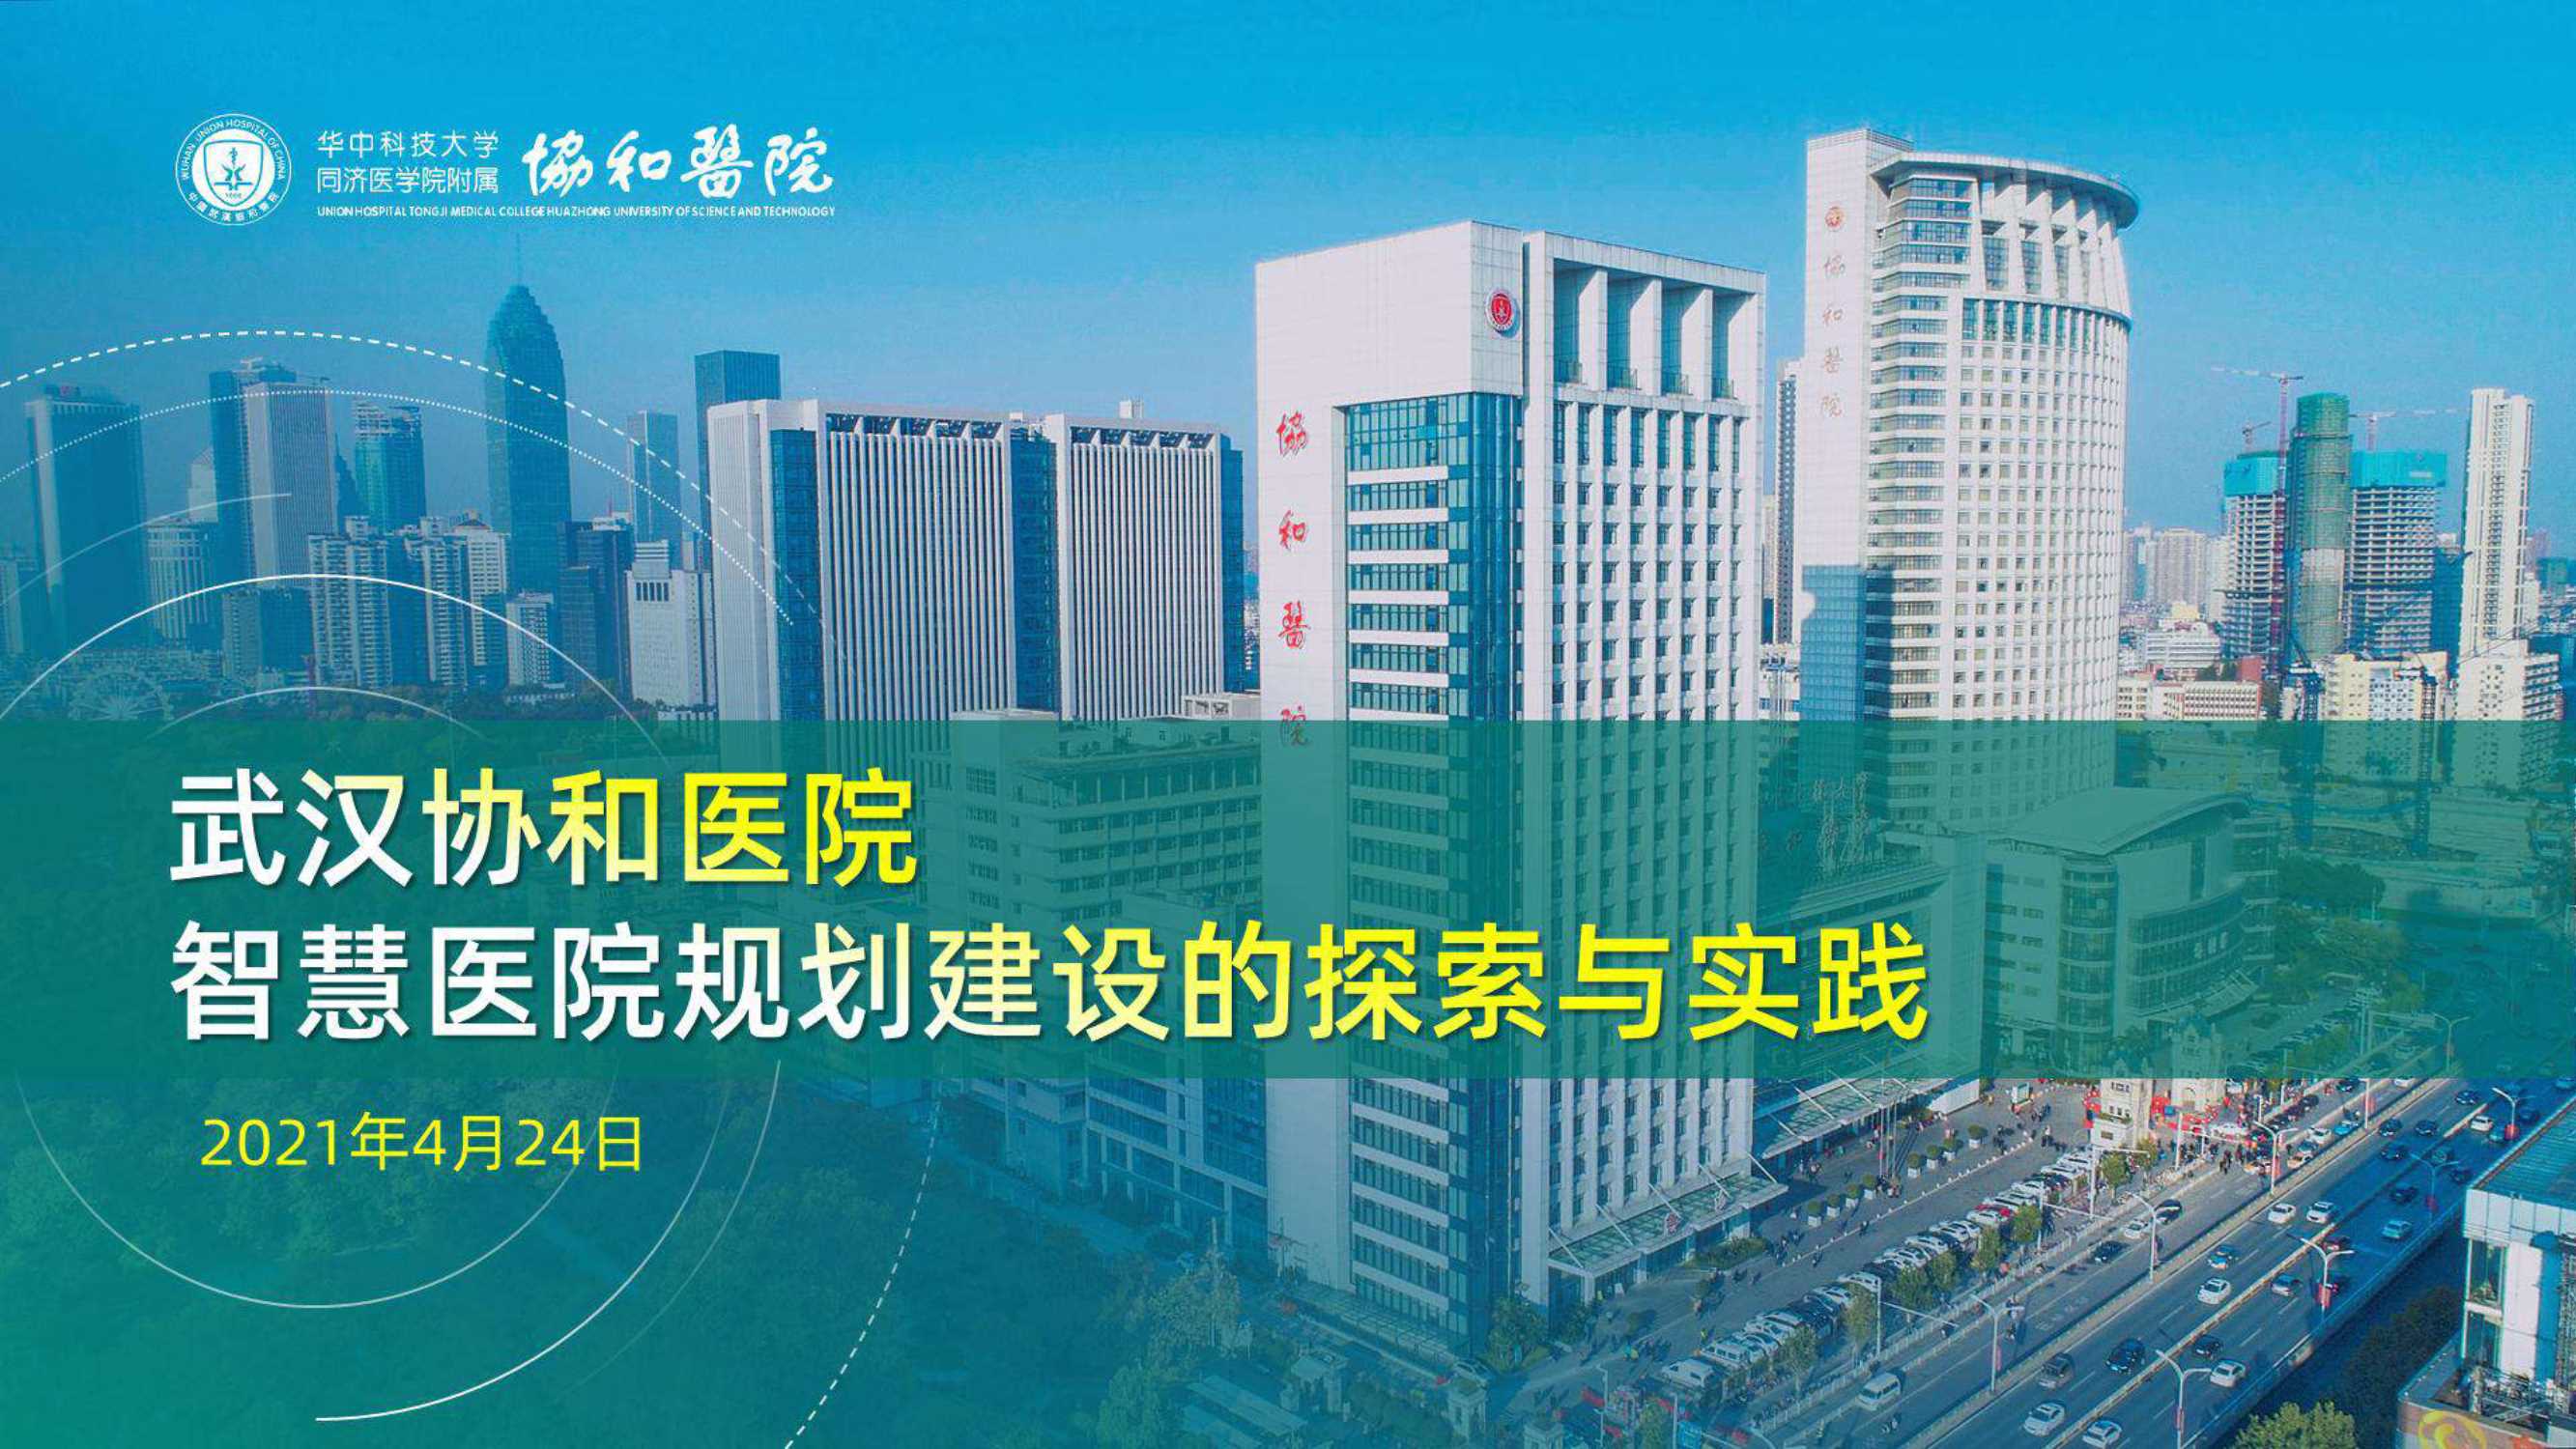 武汉协和医院智慧医院规划建设的探索与实践（张强）-2021.04-69页